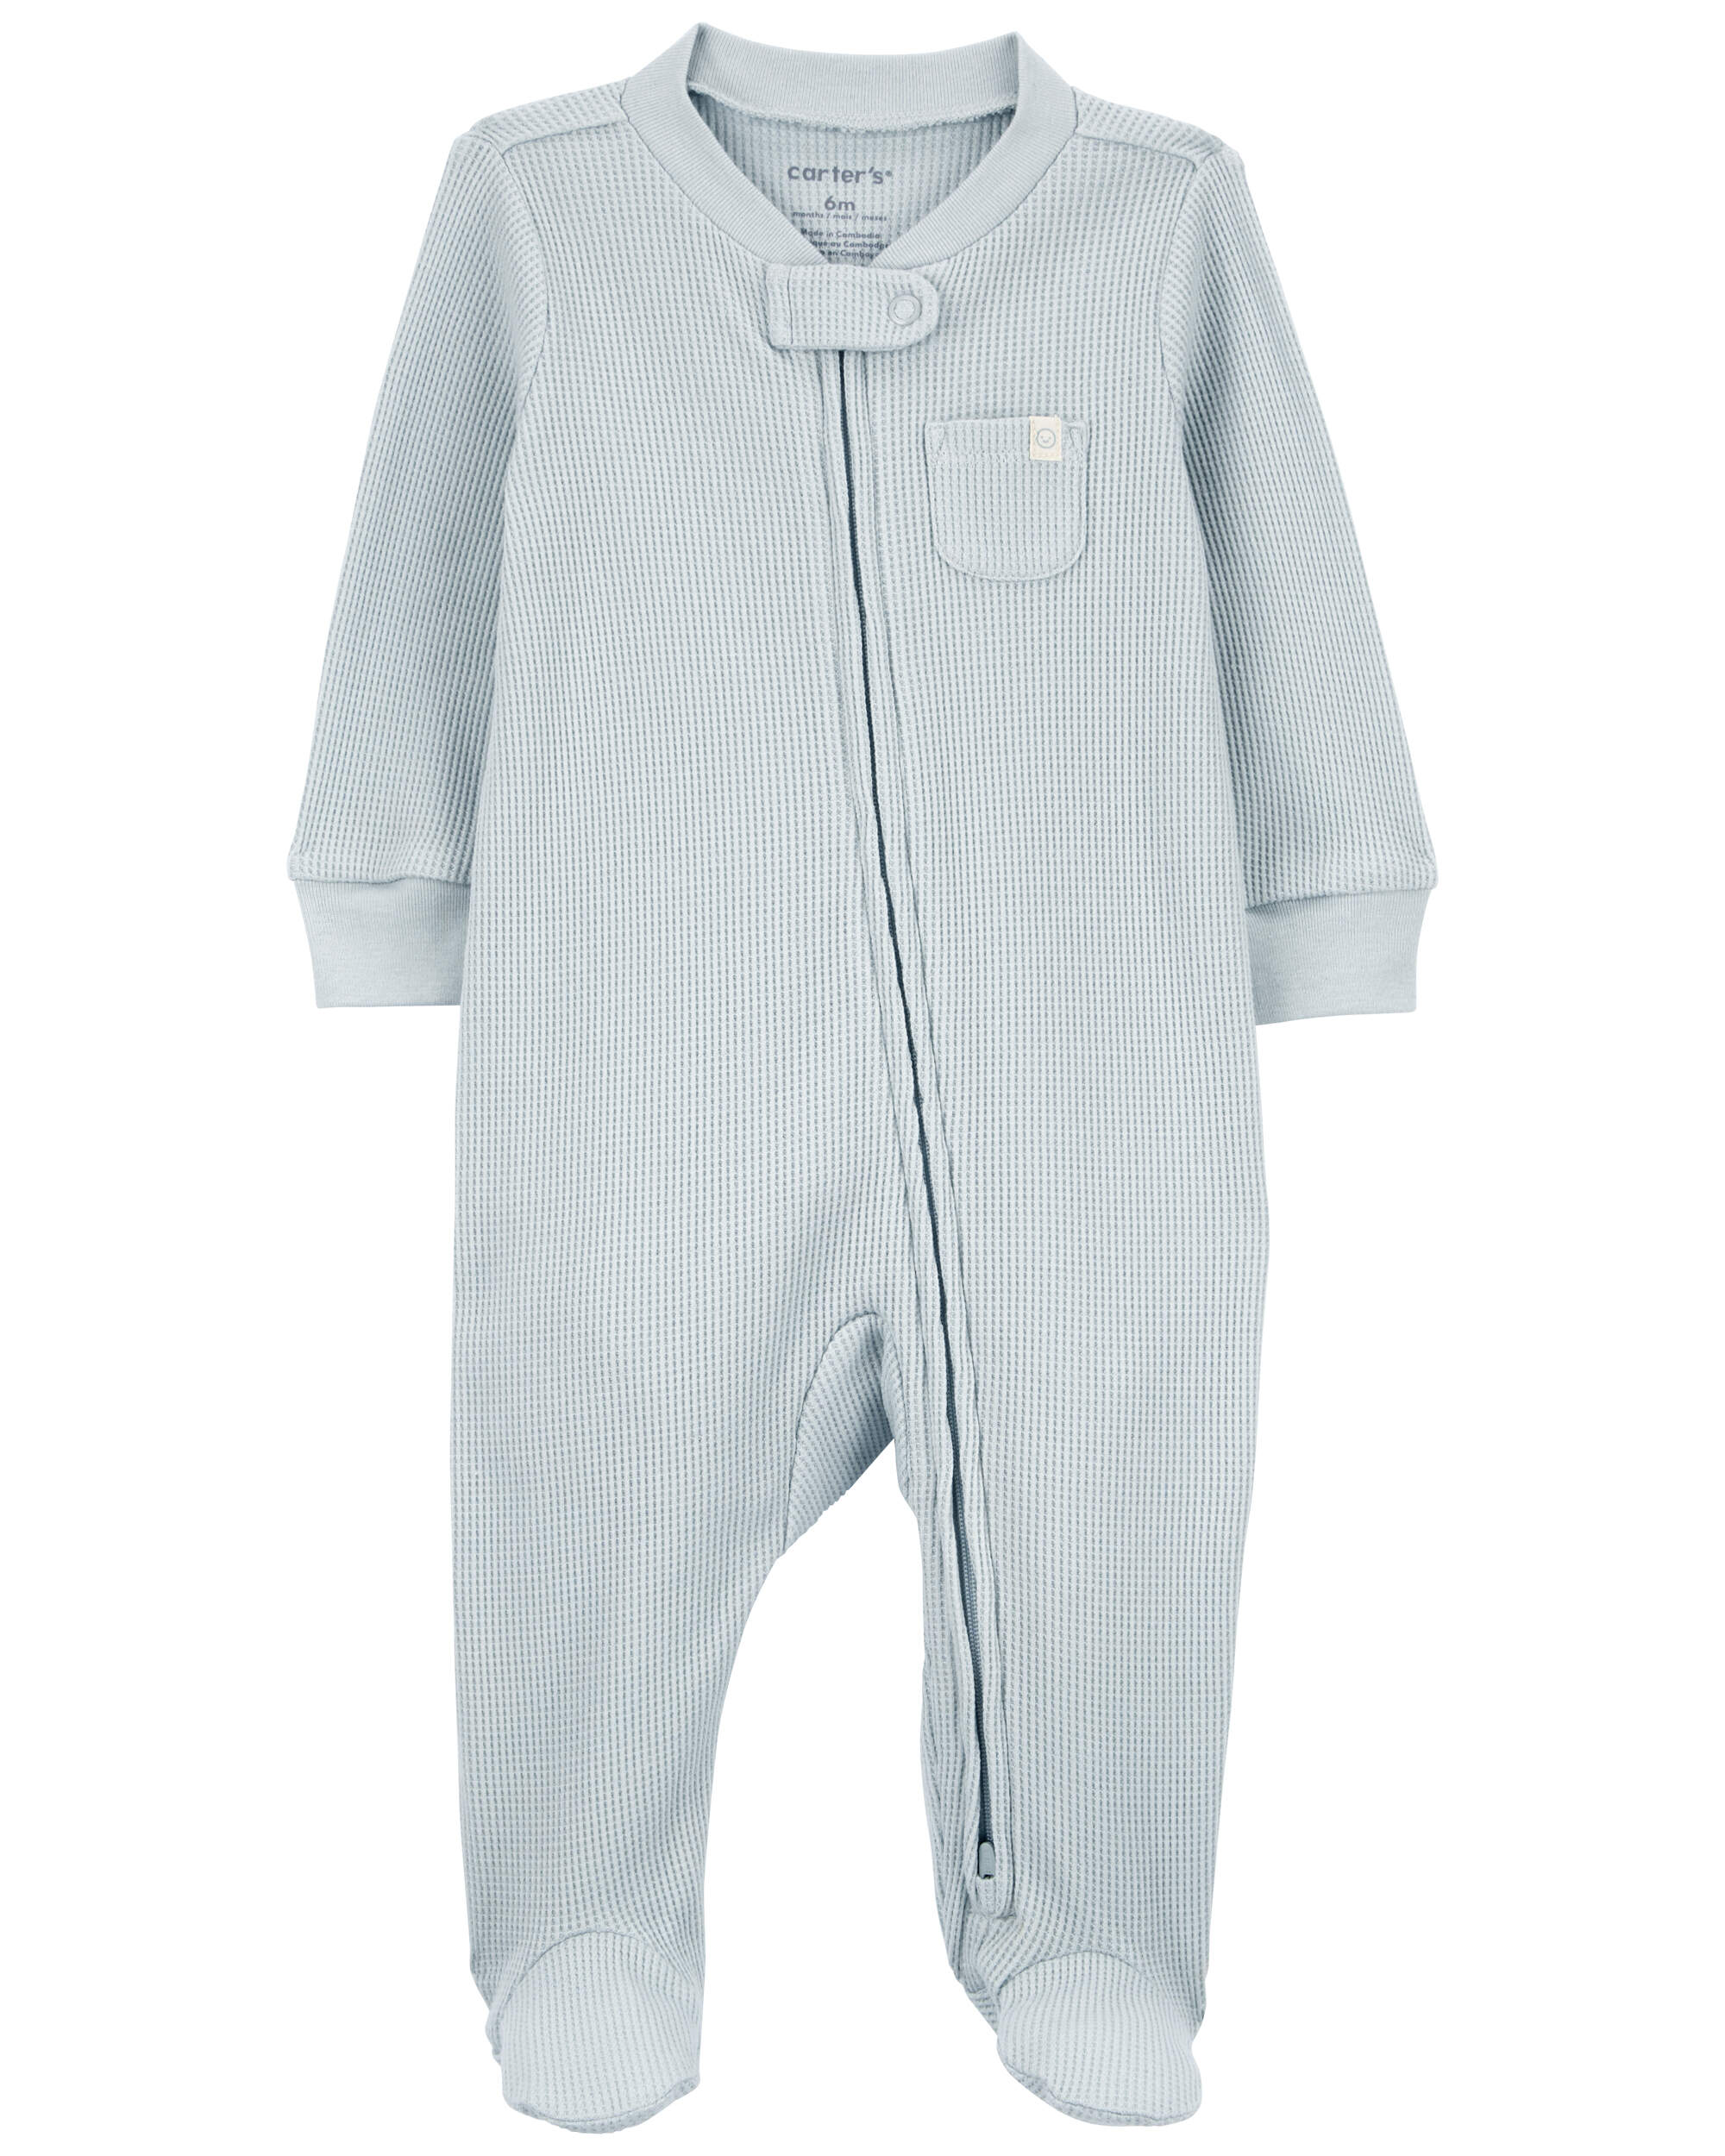 Baby 1-Piece Thermal Textured Footie Pajamas